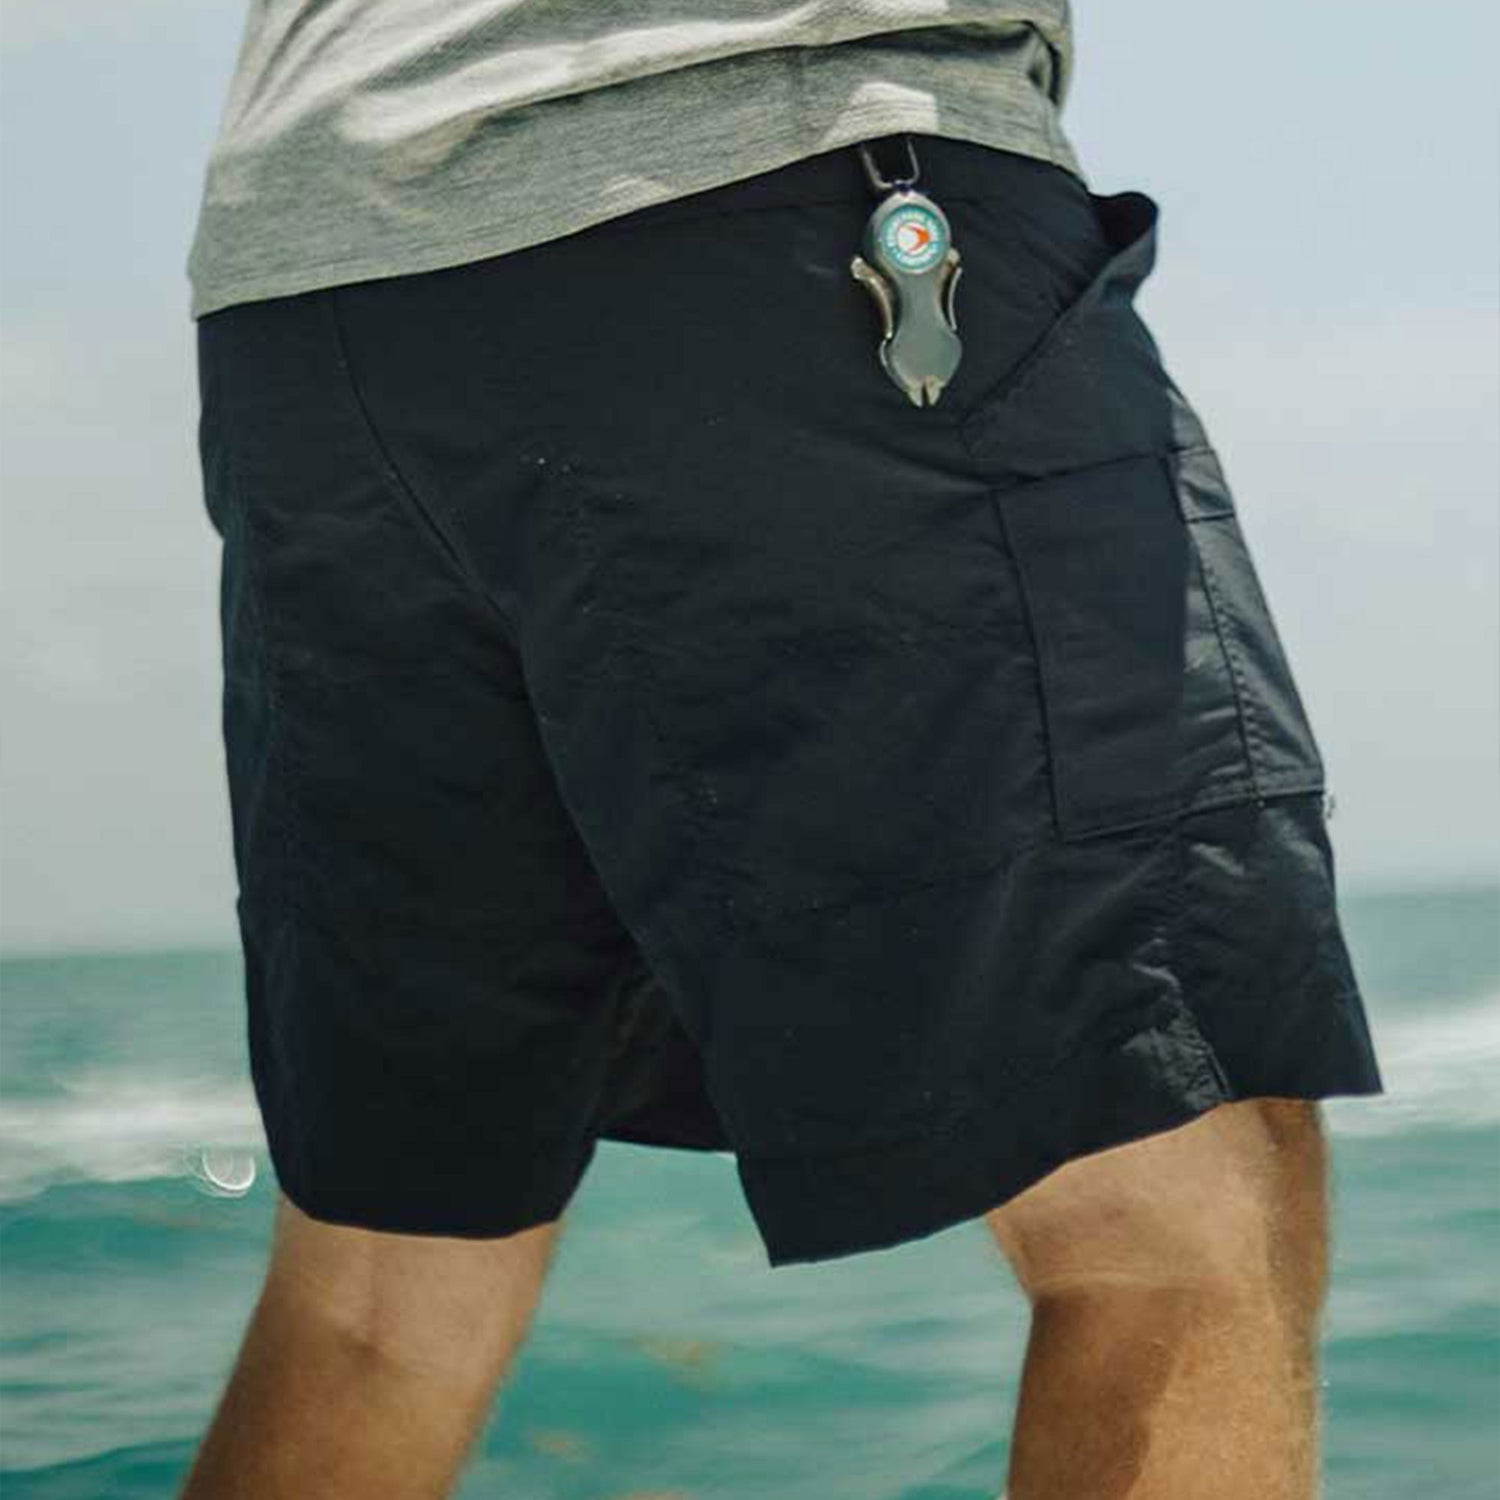 Pantalones cortos de pádel Culpables – FishirtShop